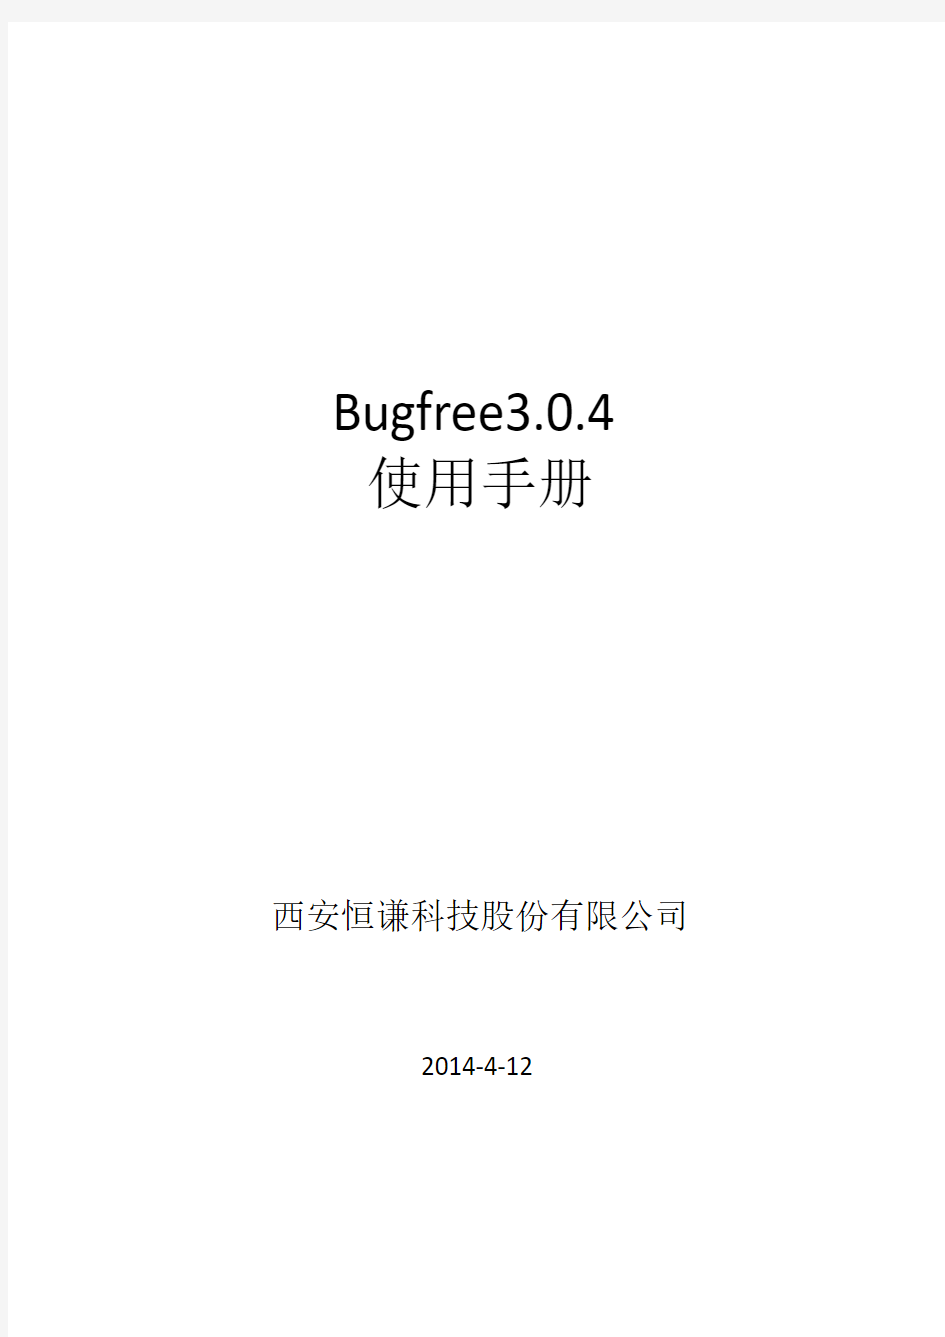 Bugfree3.0.4使用手册